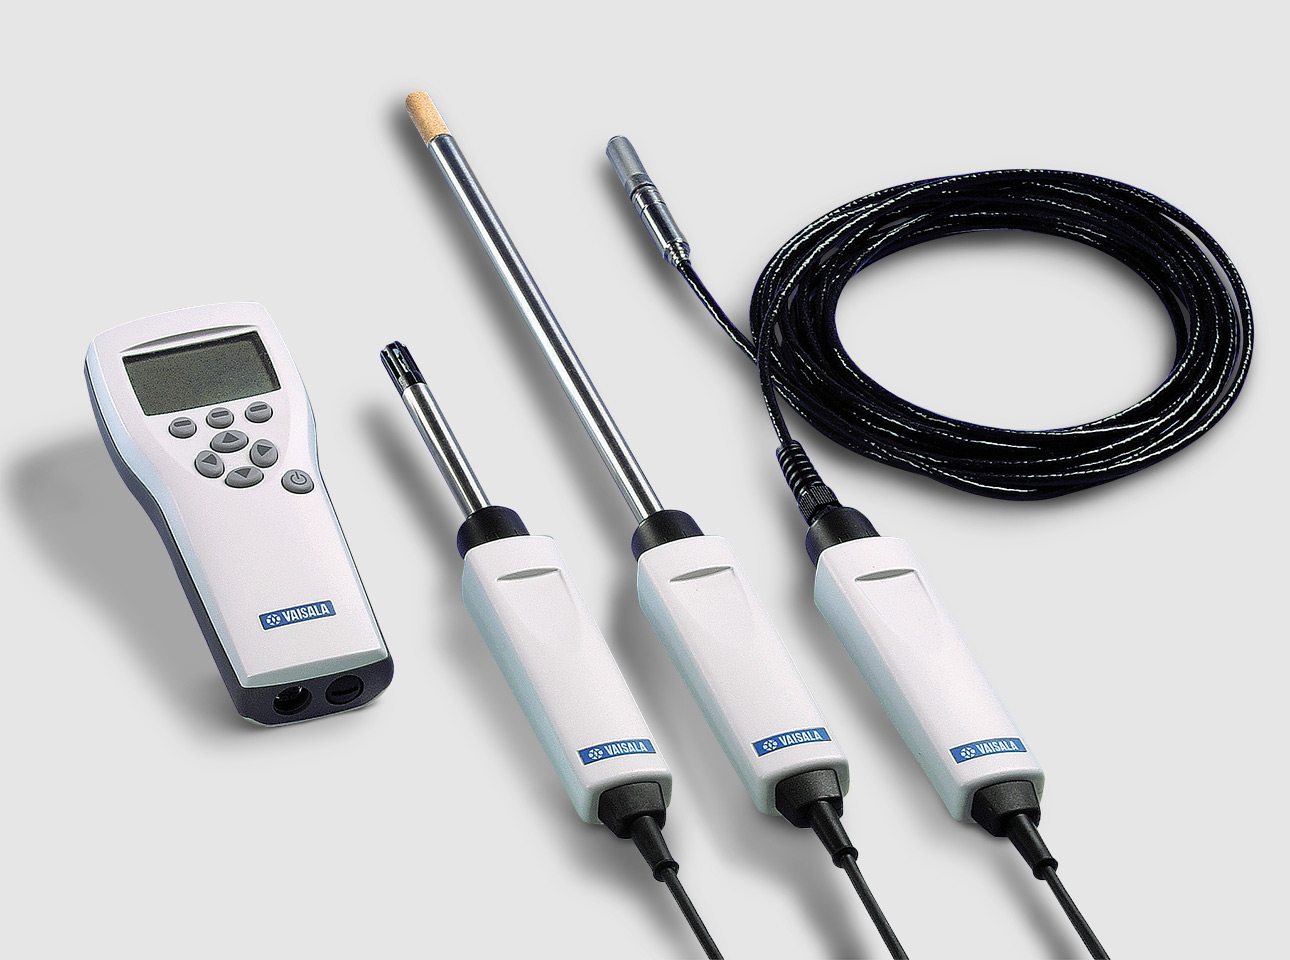 VAISALAHUMICAP®HM70手持湿度仪设计用于在检查点检查应用中进行湿度测量。